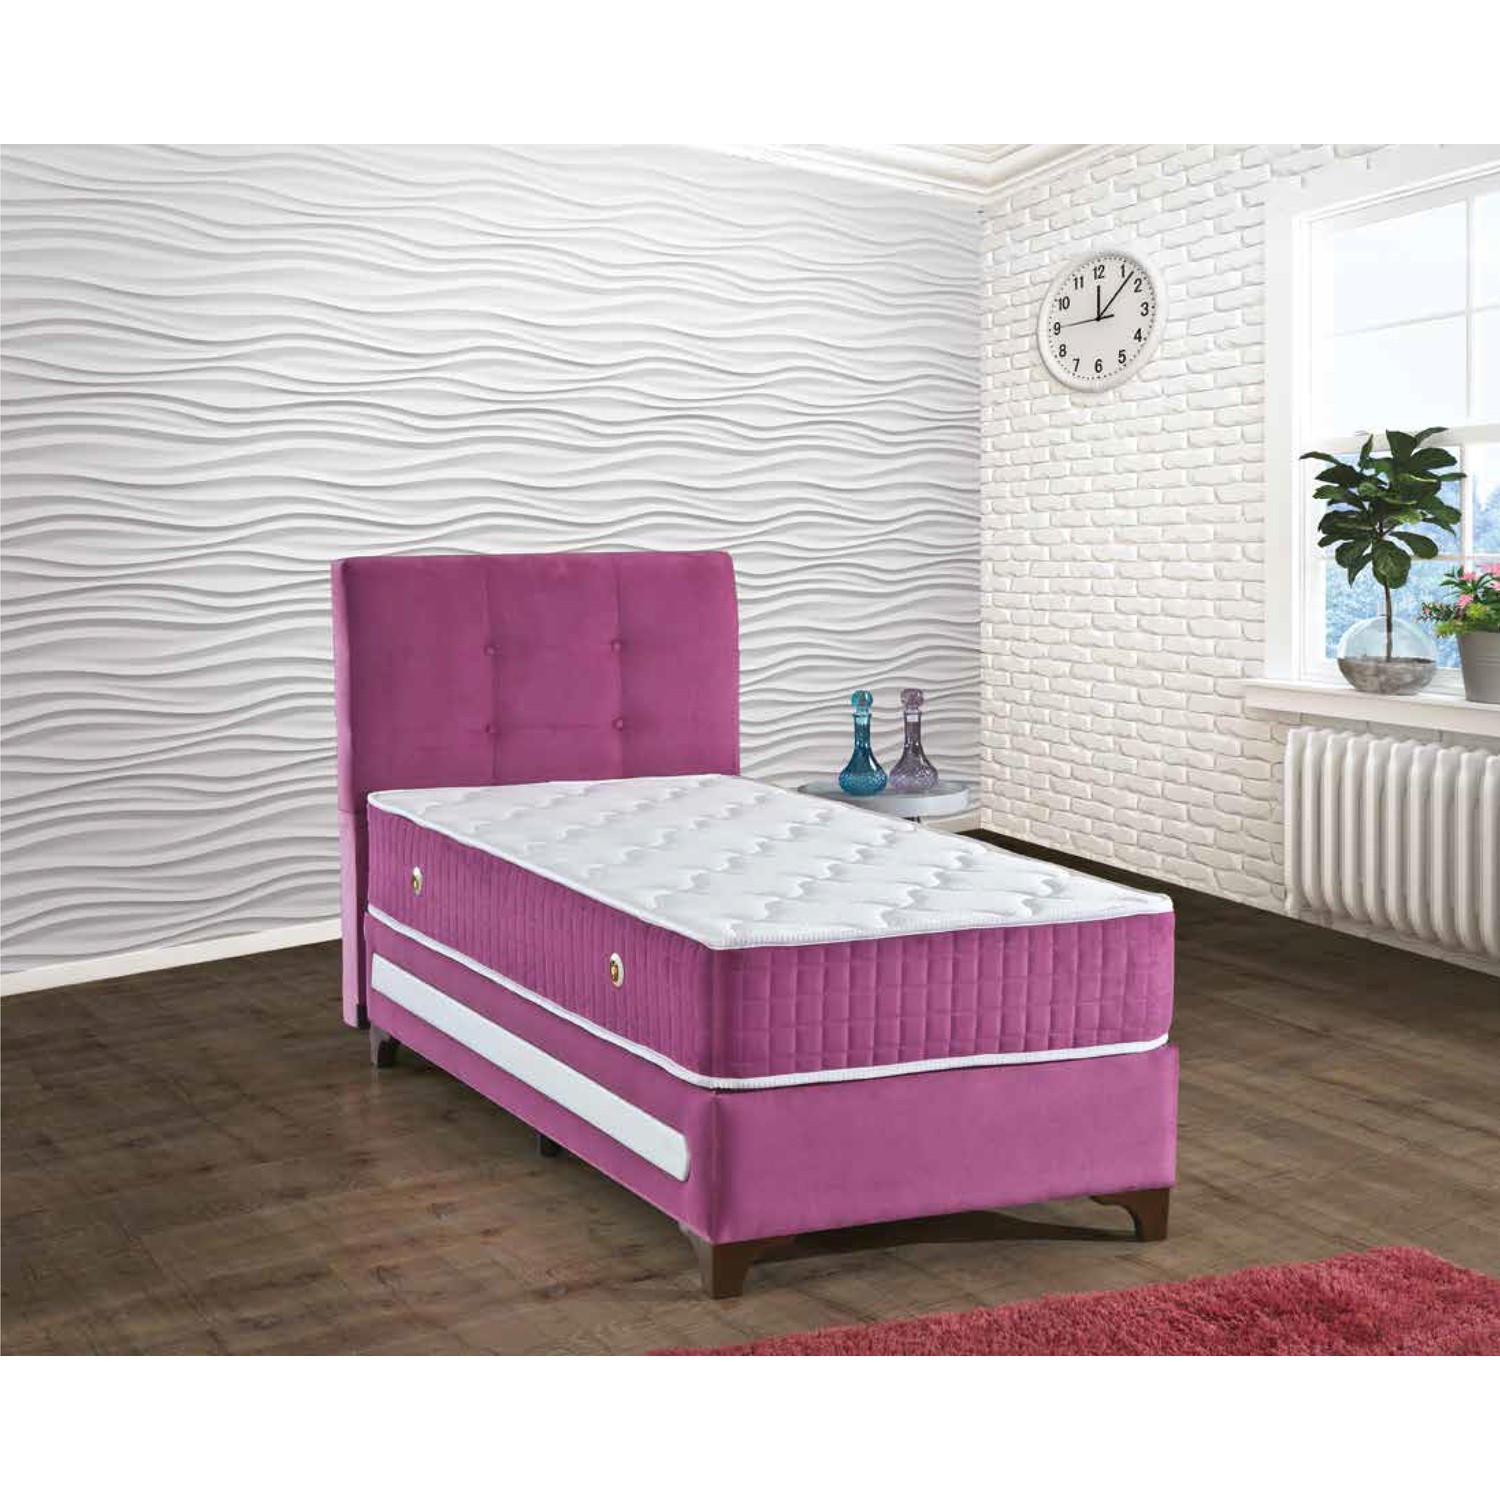 Sleep Comfort Sultan Yatak Baza Başlık Set 90x190 Fiyatı